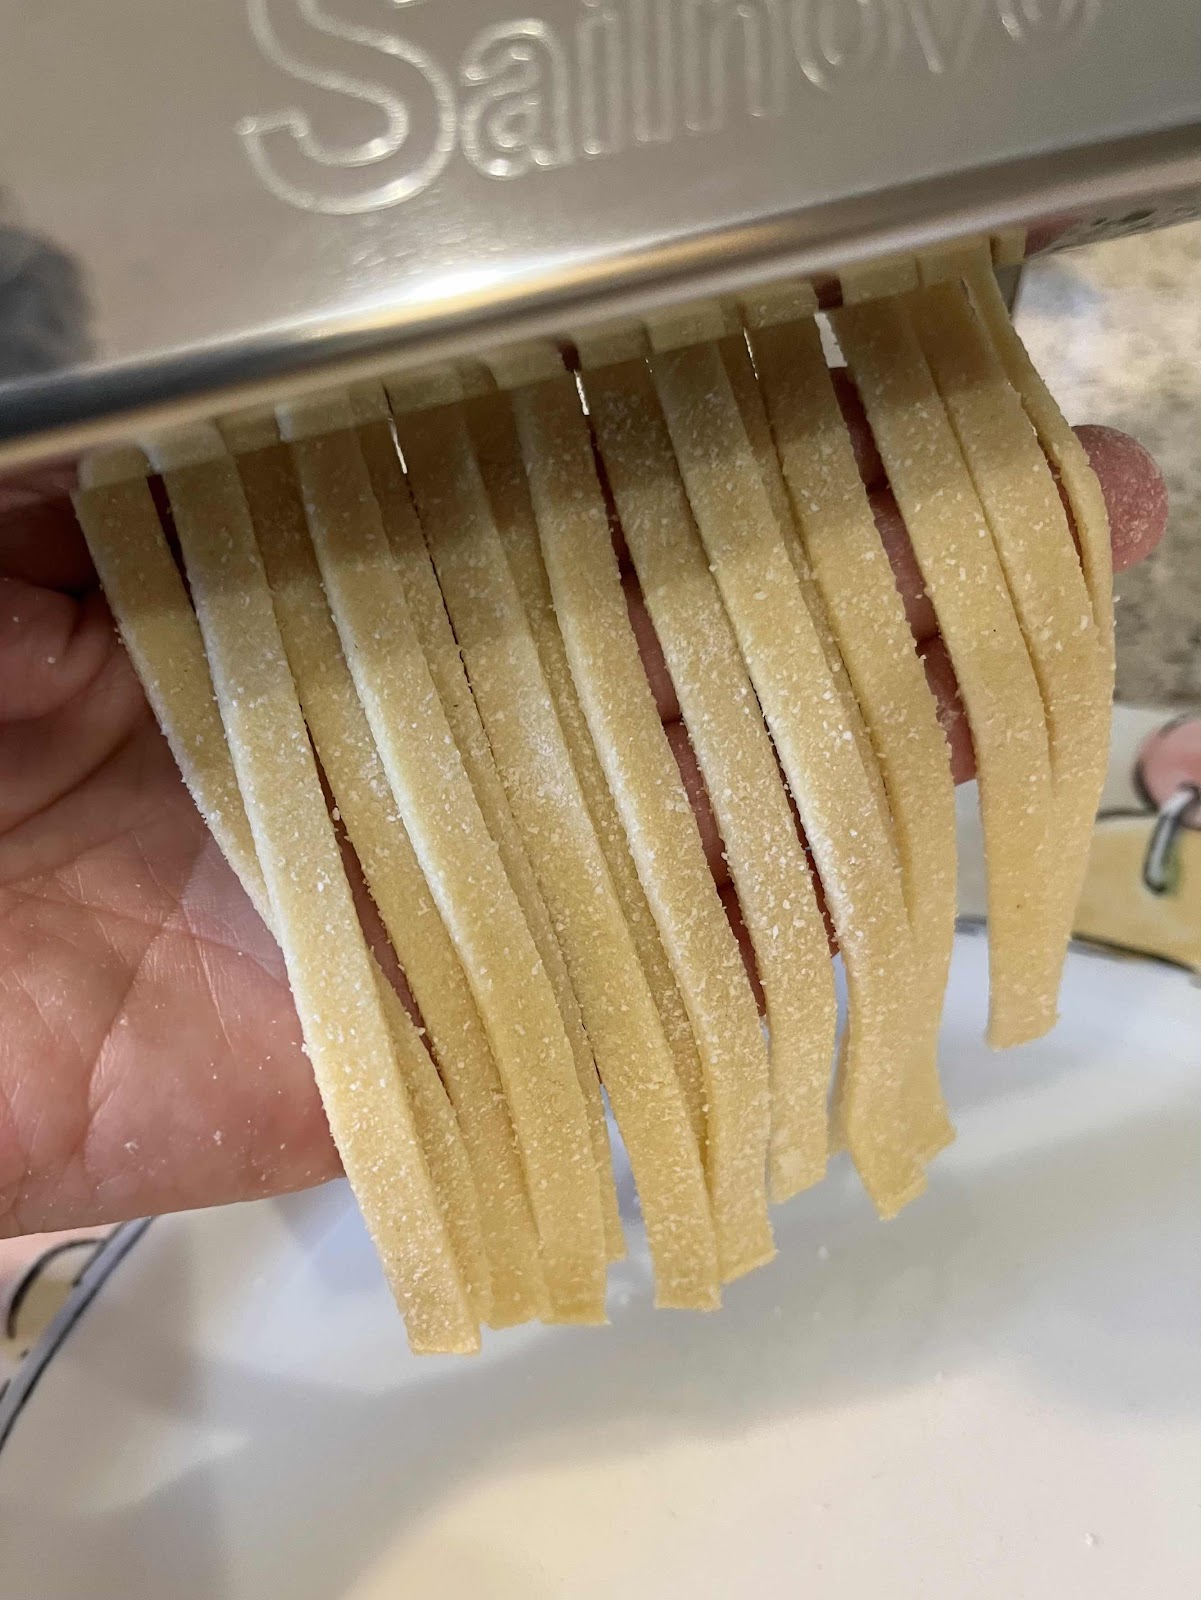 Cut the dough into fettuccine noodles